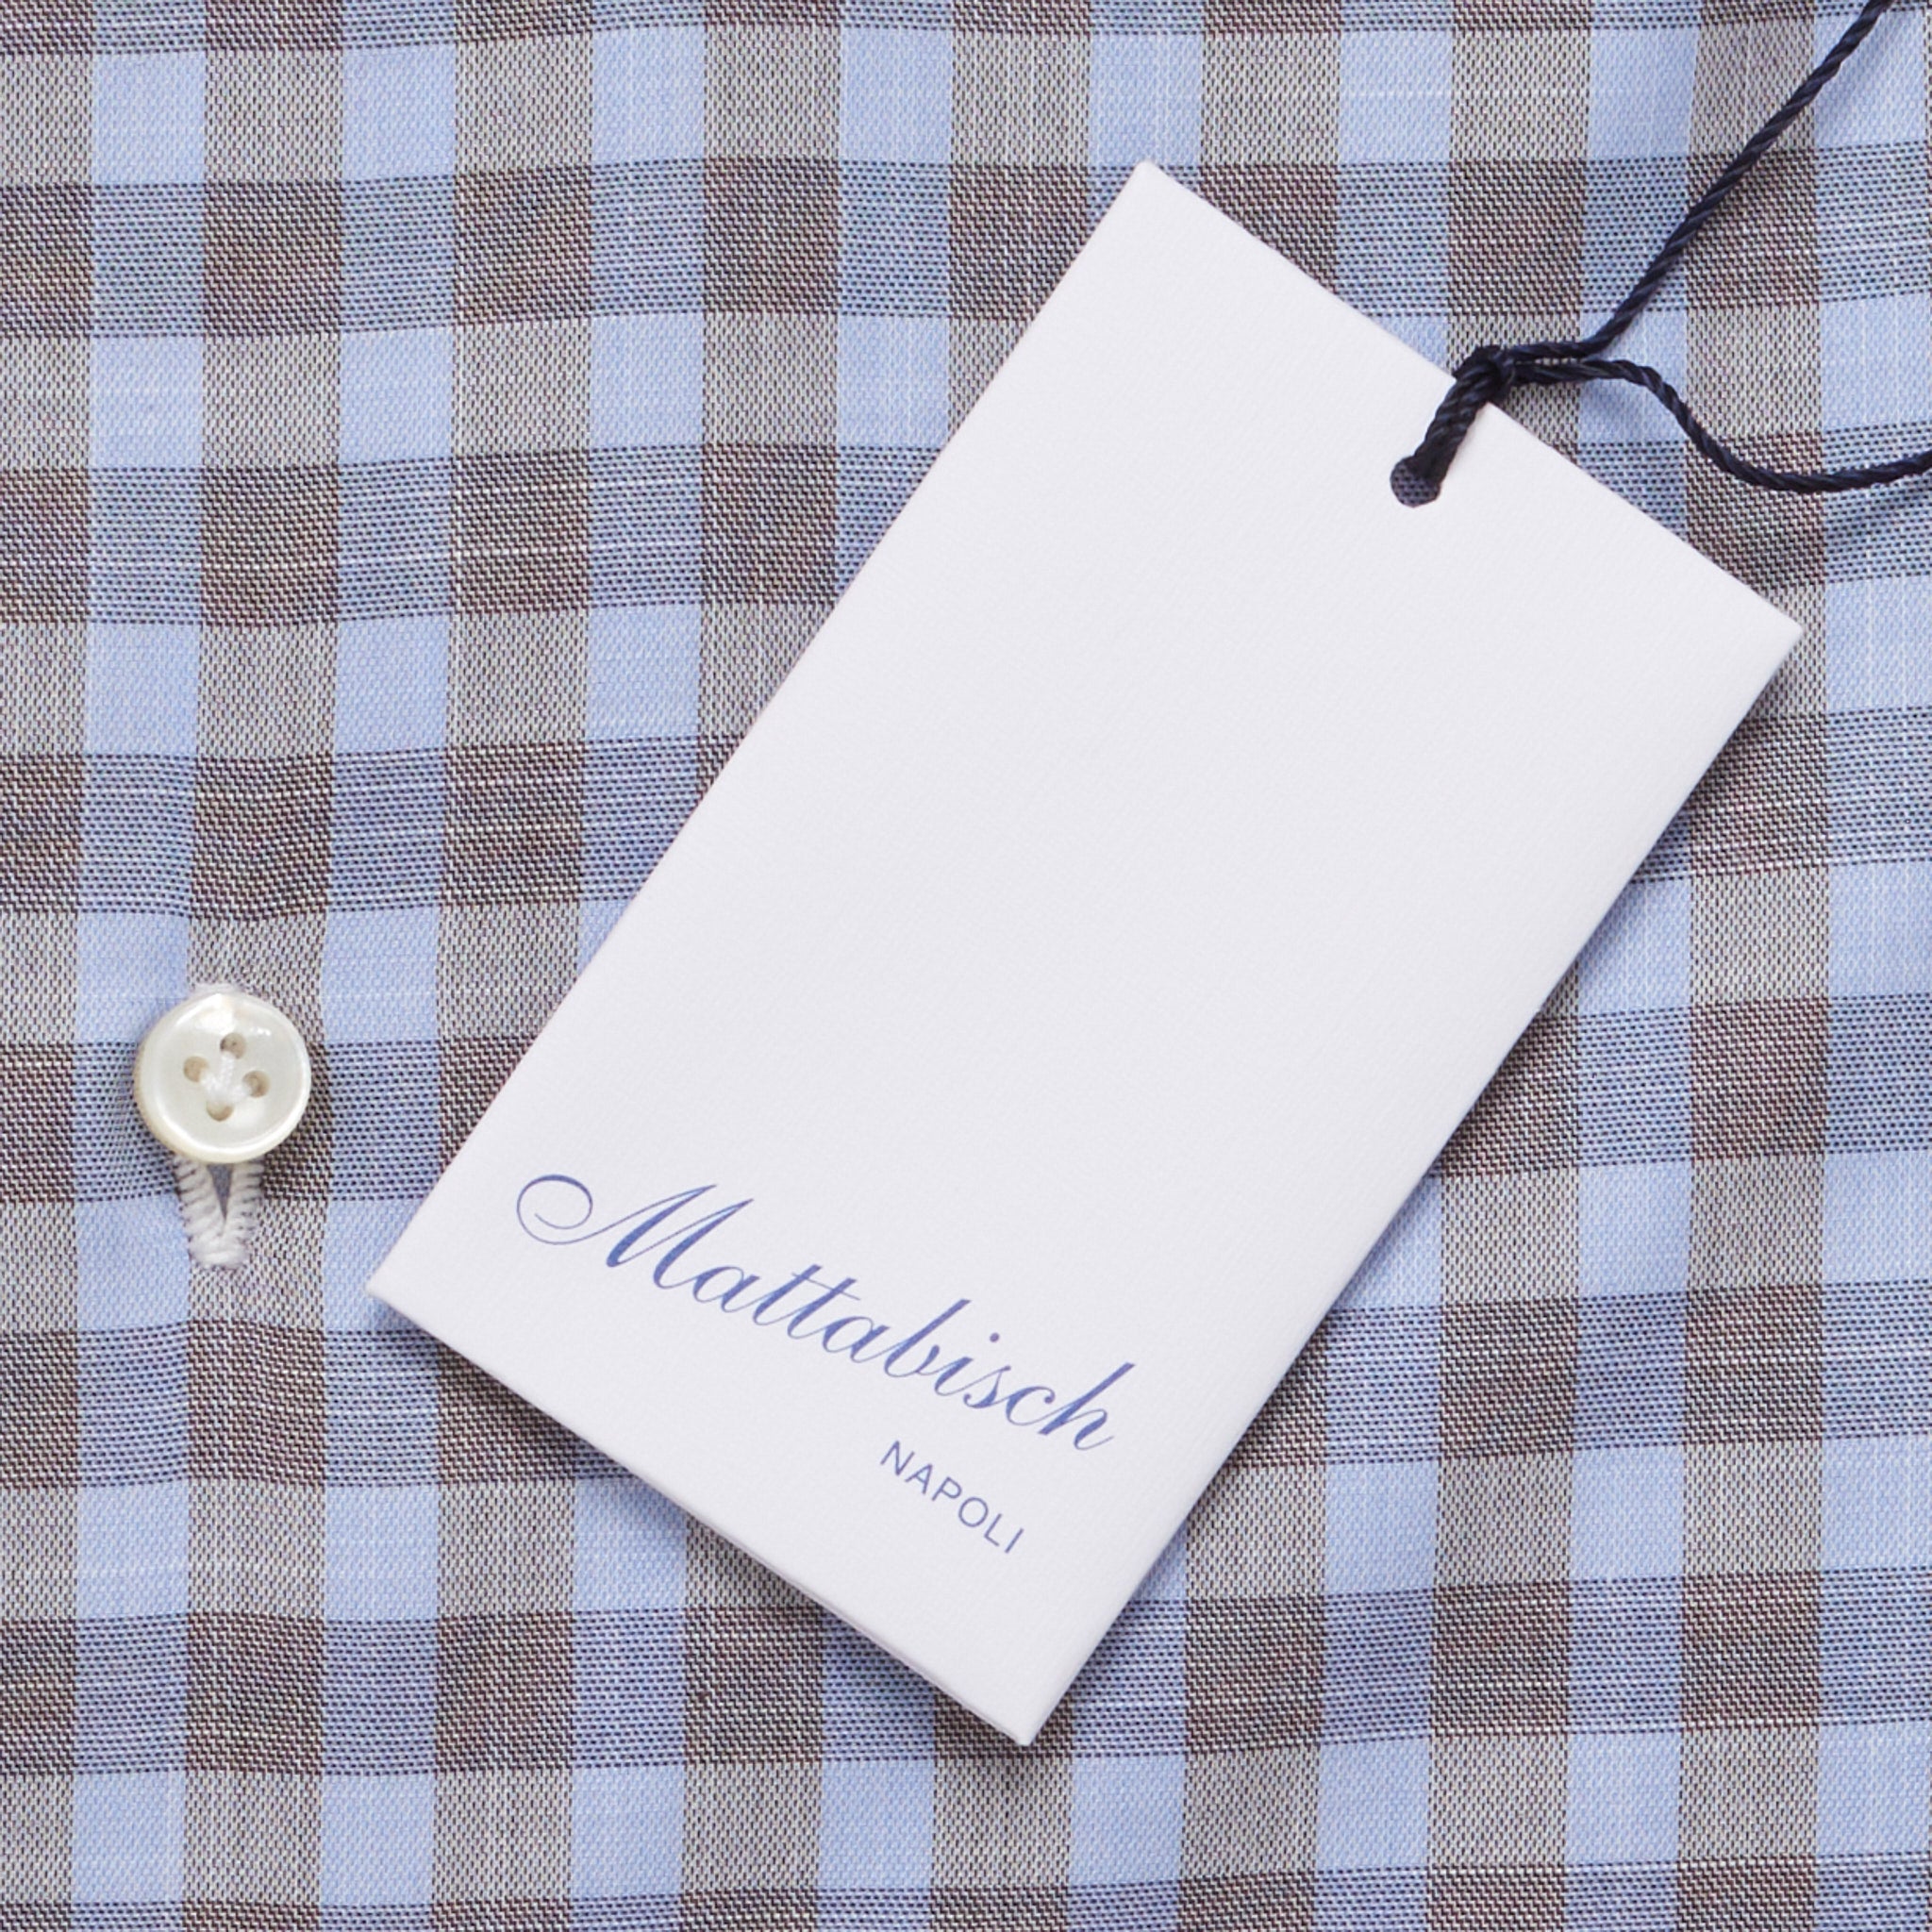 MATTABISCH by Kiton Handmade Gray-Blue Plaid Dress Shirt US 16 NEW EU 41 MATTABISCH